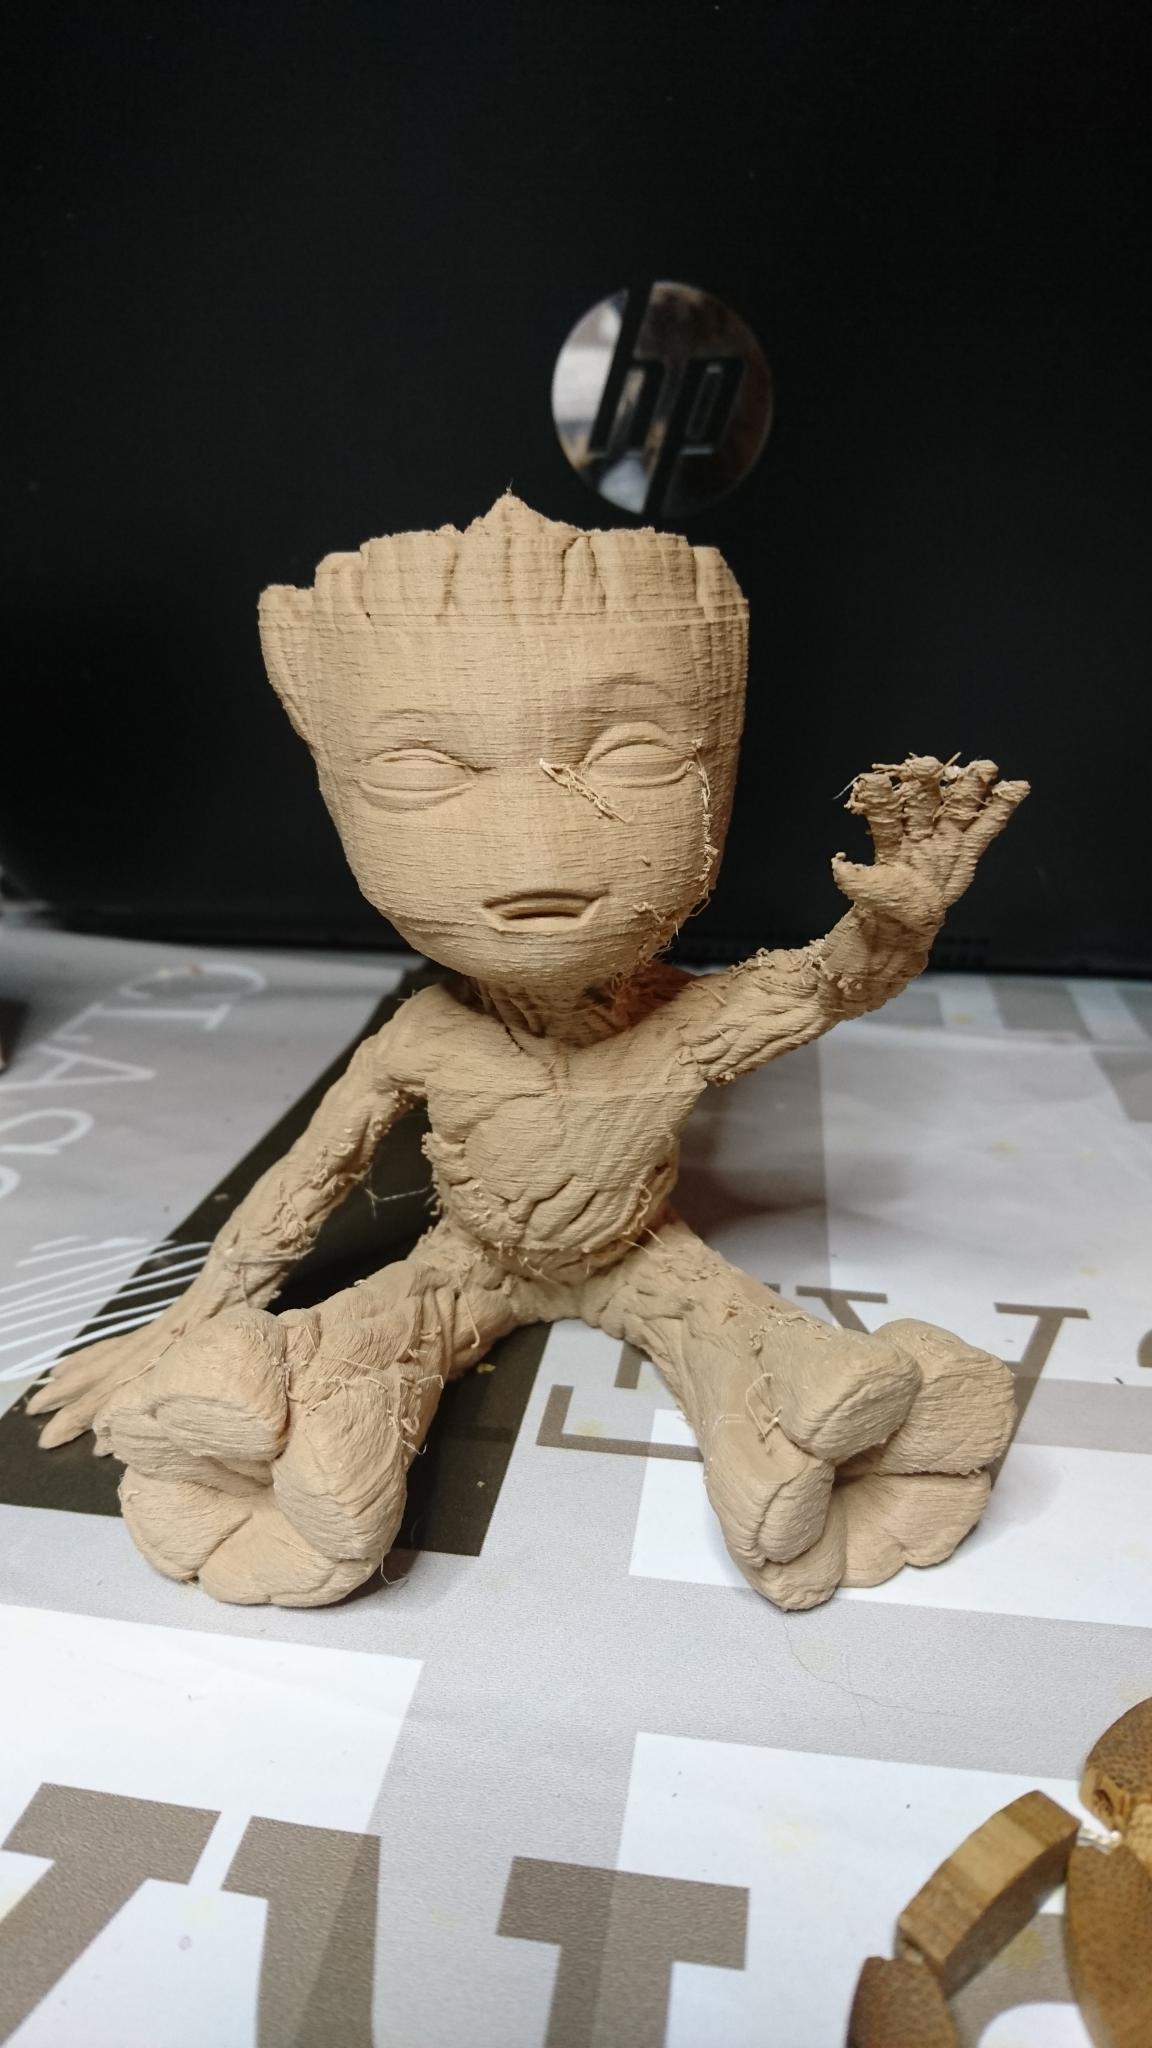 Impression filament bois - Creality - Forum pour les imprimantes 3D et  l'impression 3D